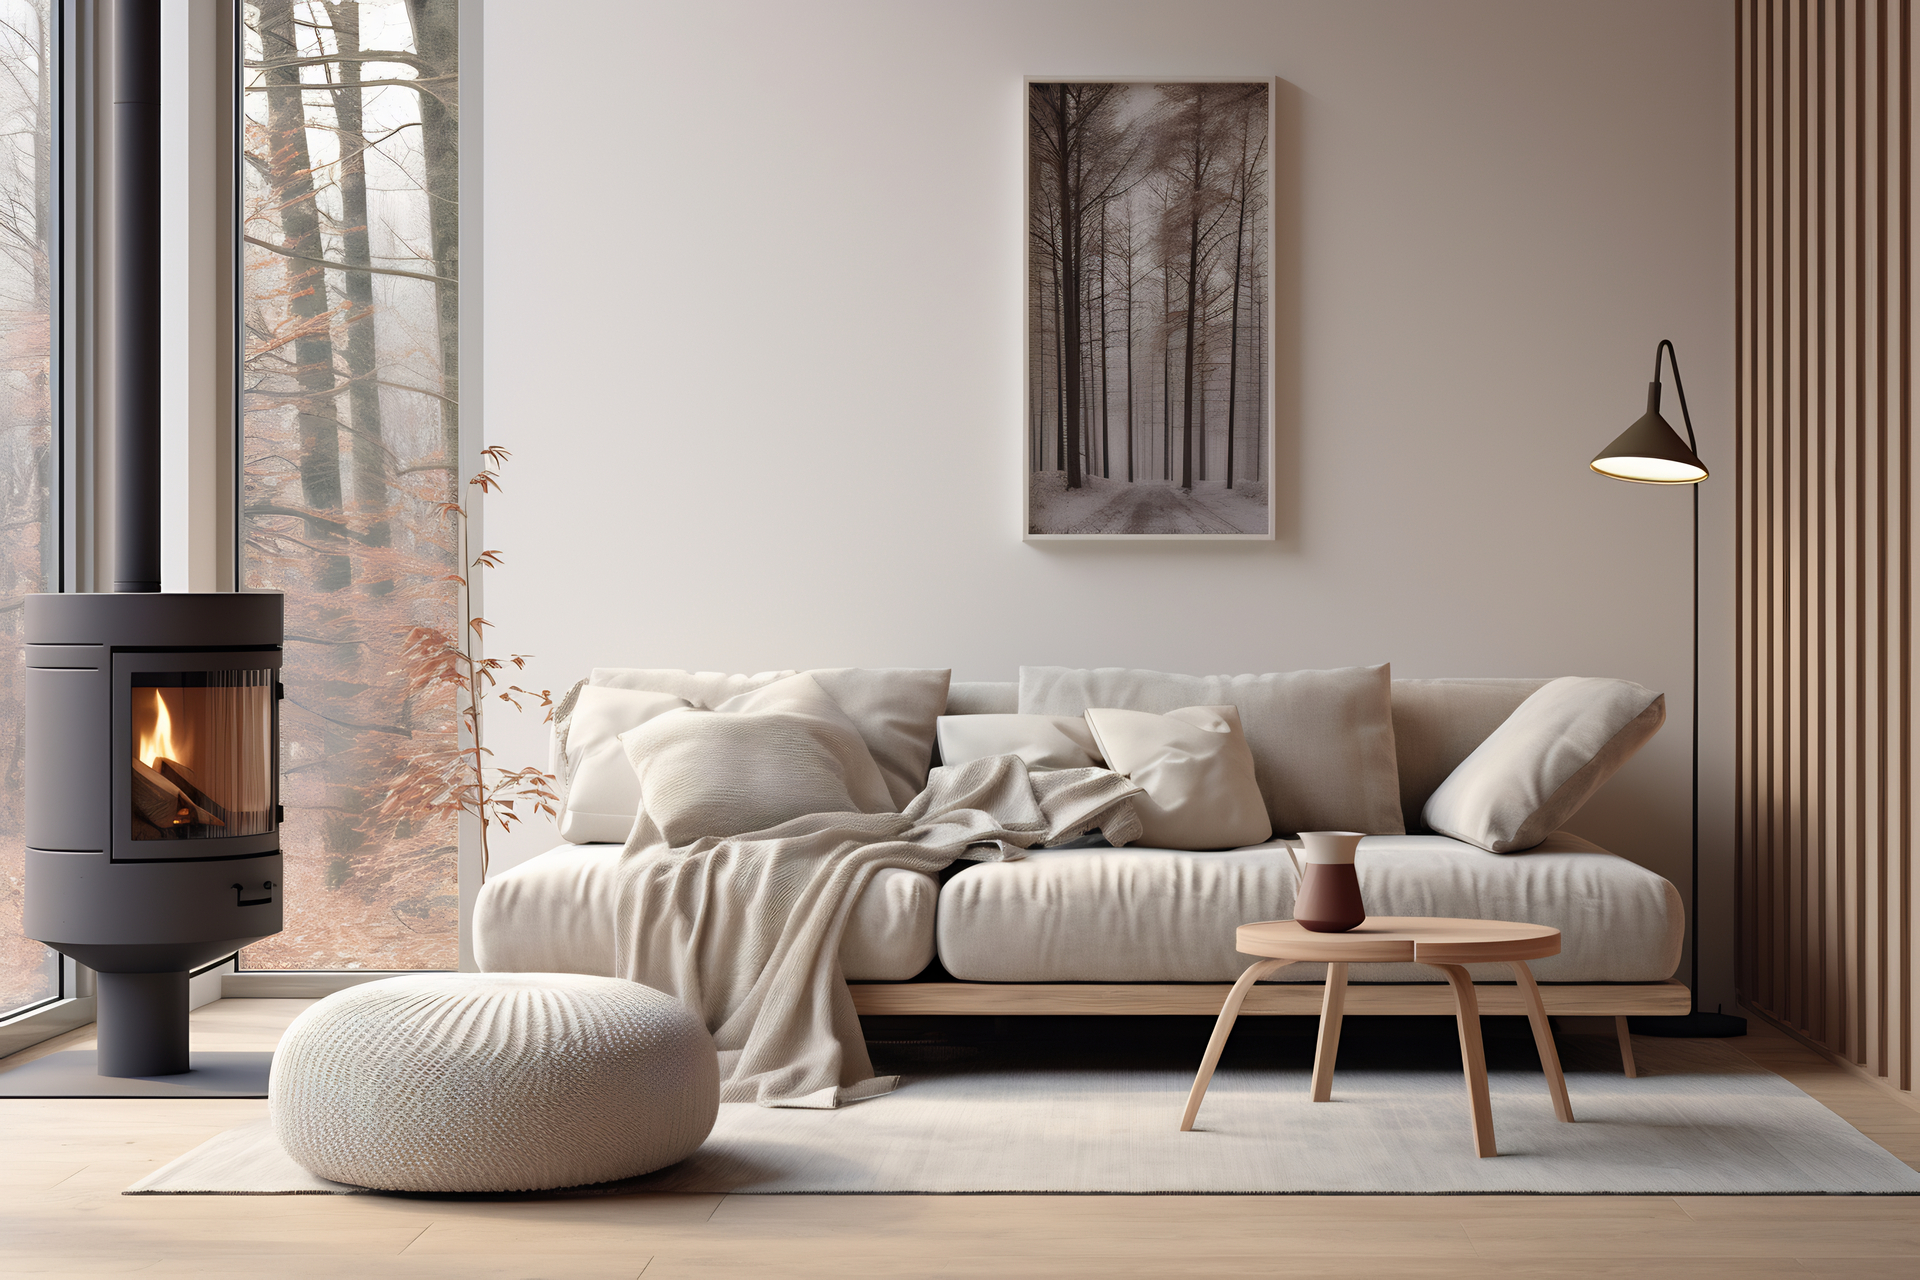 Na obrazku widać przestronny salon urządzony w stylu skandynawskim. Jasne odcienie drewna, białe ściany i minimalistyczne meble dodają przestrzeni i lekkości. Duże okna wpuszczają mnóstwo naturalnego światła, podkreślając przyjazną i otwartą atmosferę tego wnętrza